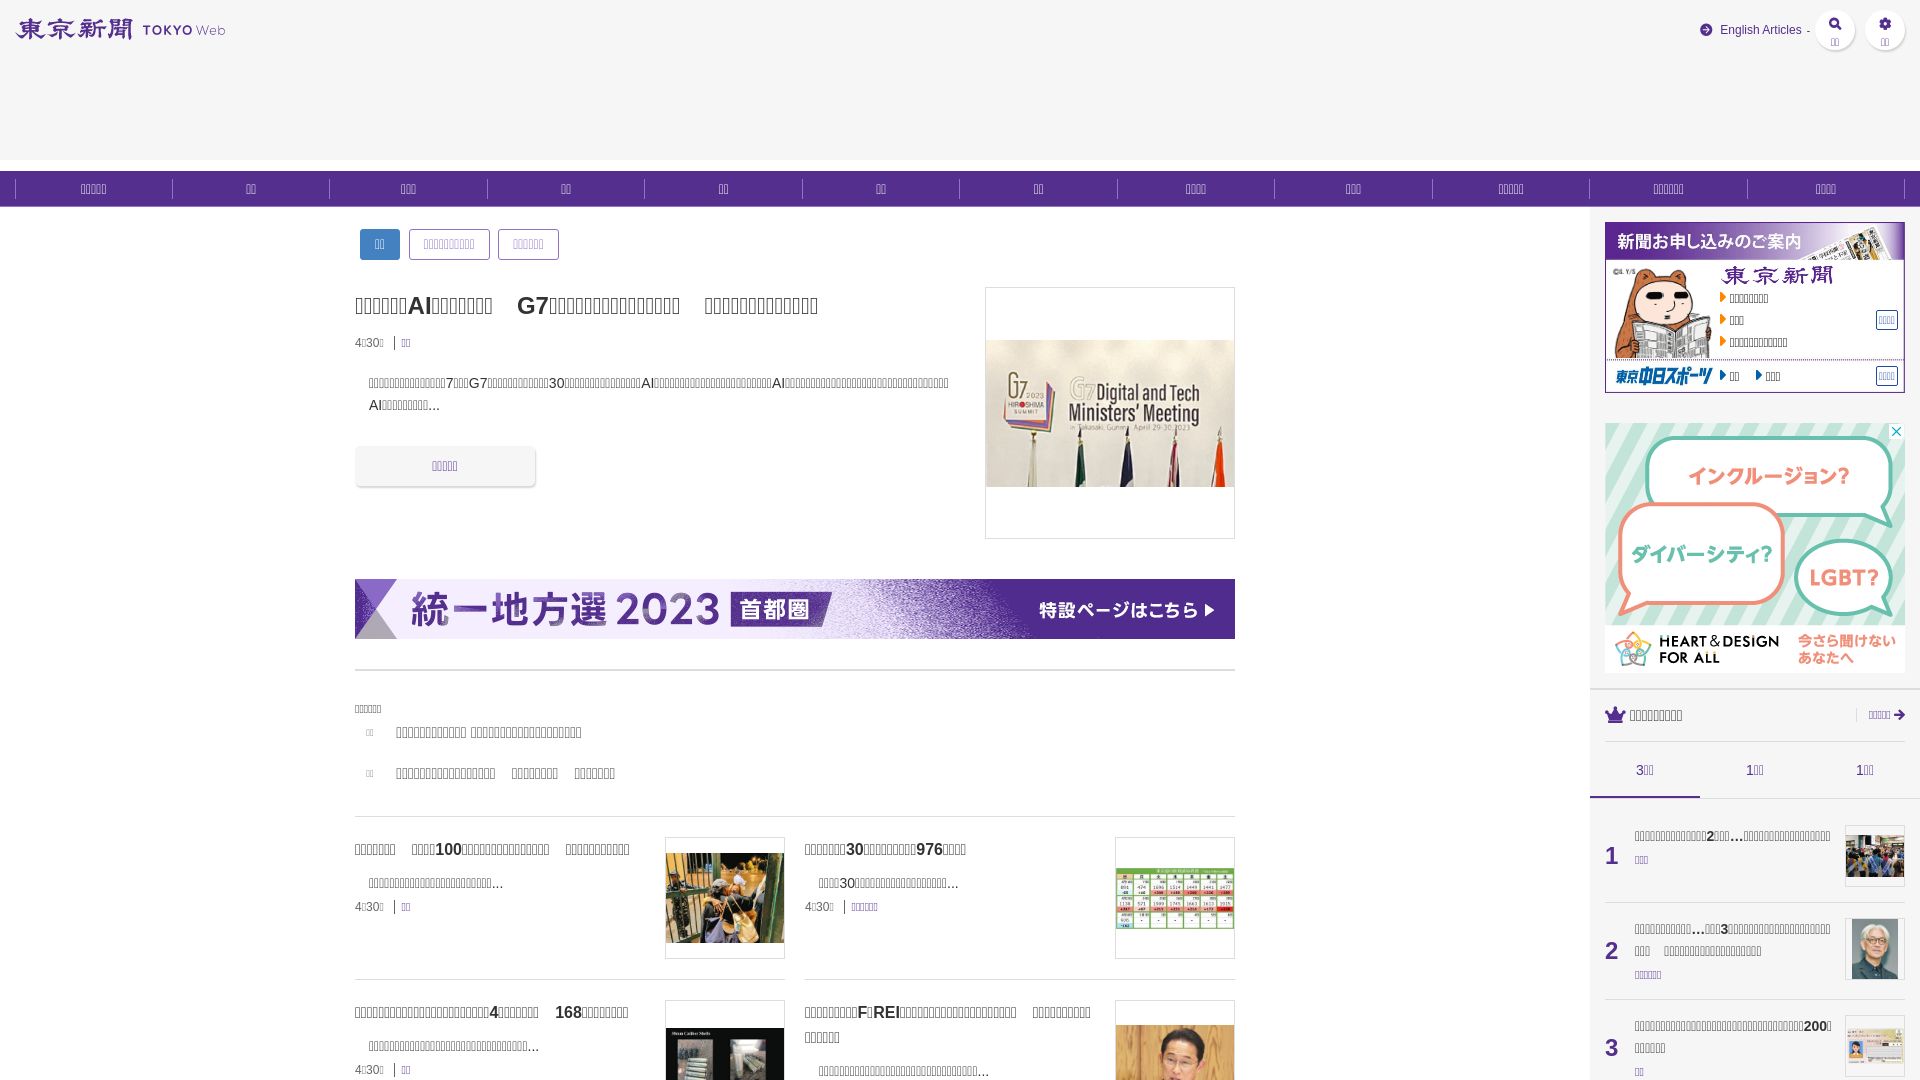 Website status tokyo-np.co.jp is   ONLINE